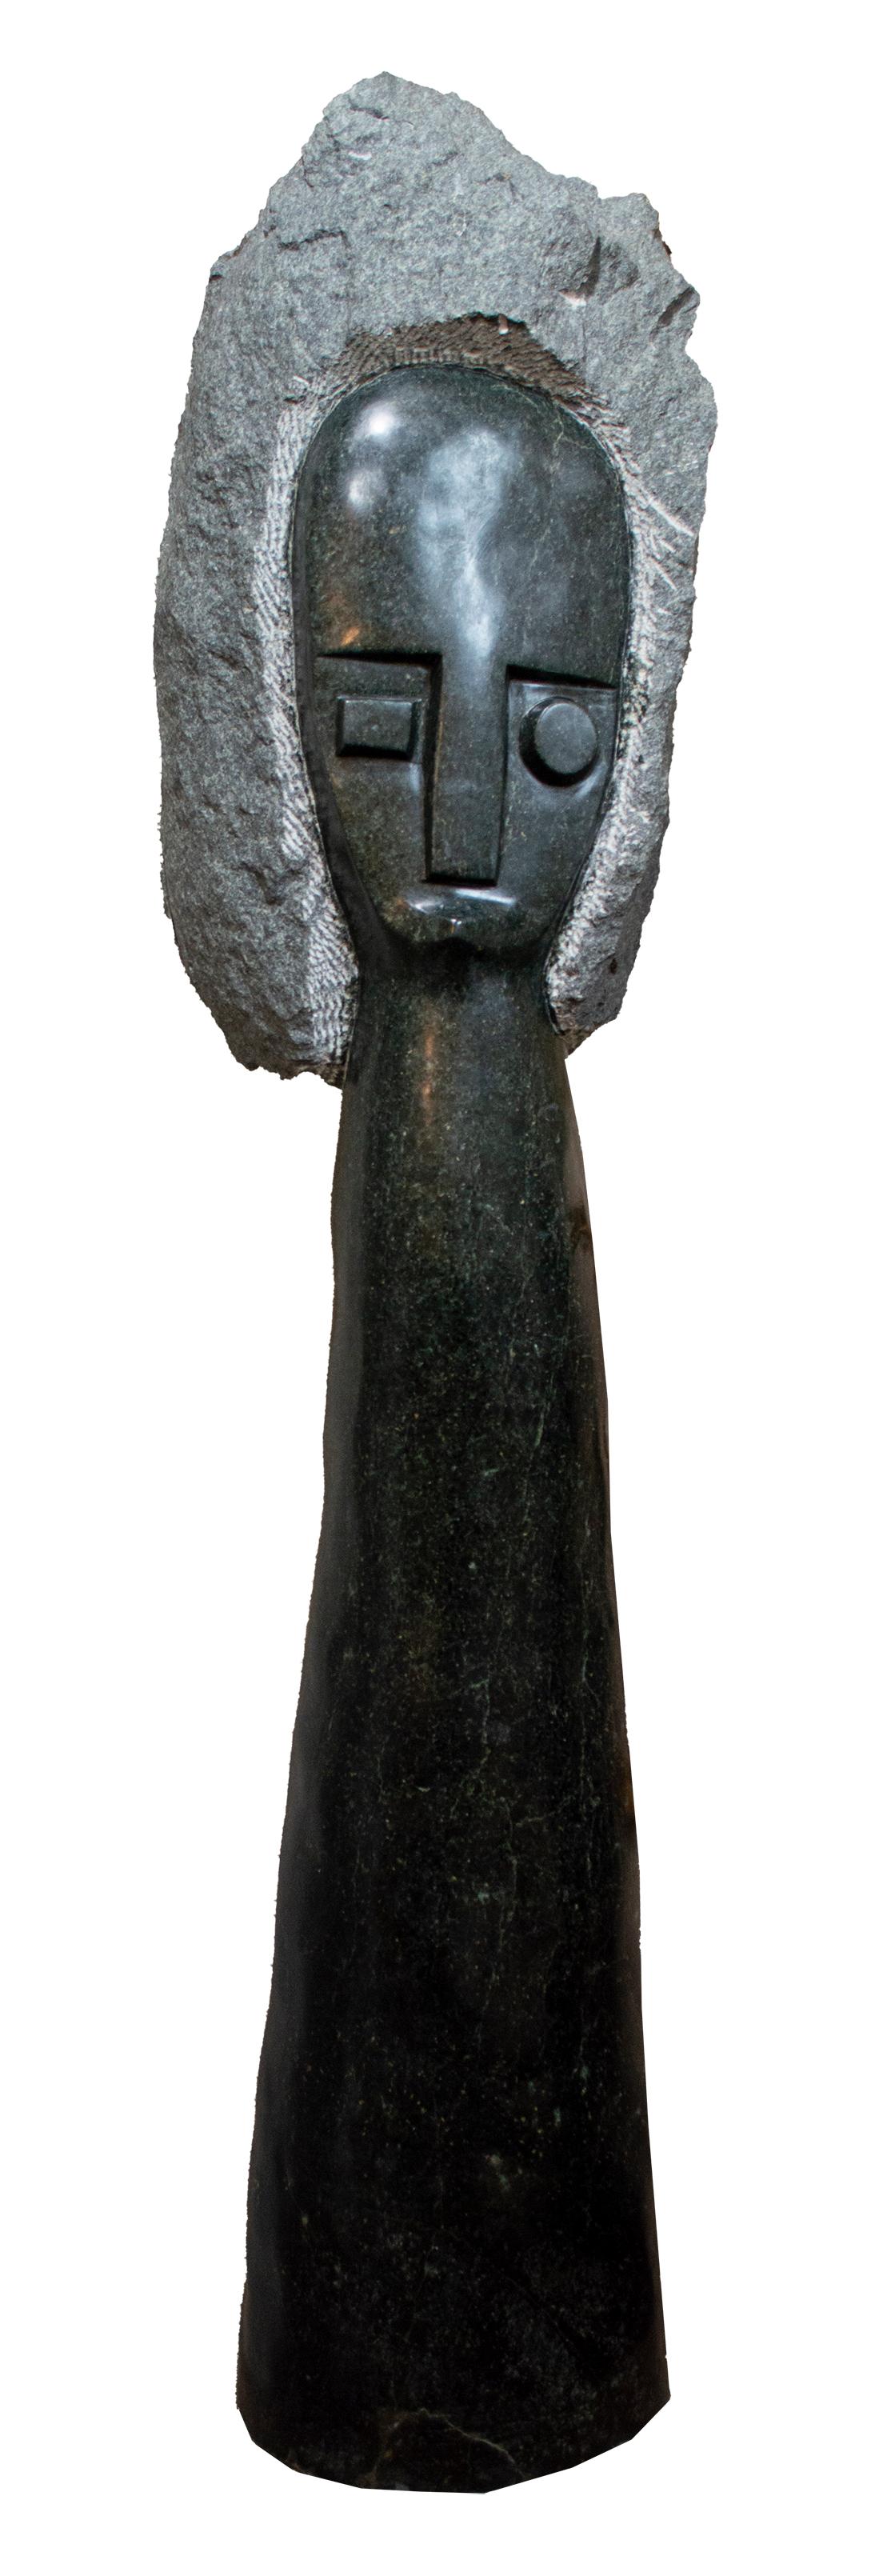 African Queen" est une sculpture originale en pierre serpentine opale signée par l'artiste contemporain zimbabwéen Chenjerai Chiripanyanga. La sculpture elle-même se dresse fièrement comme un totem, surmonté de la tête de la reine. Le traitement de